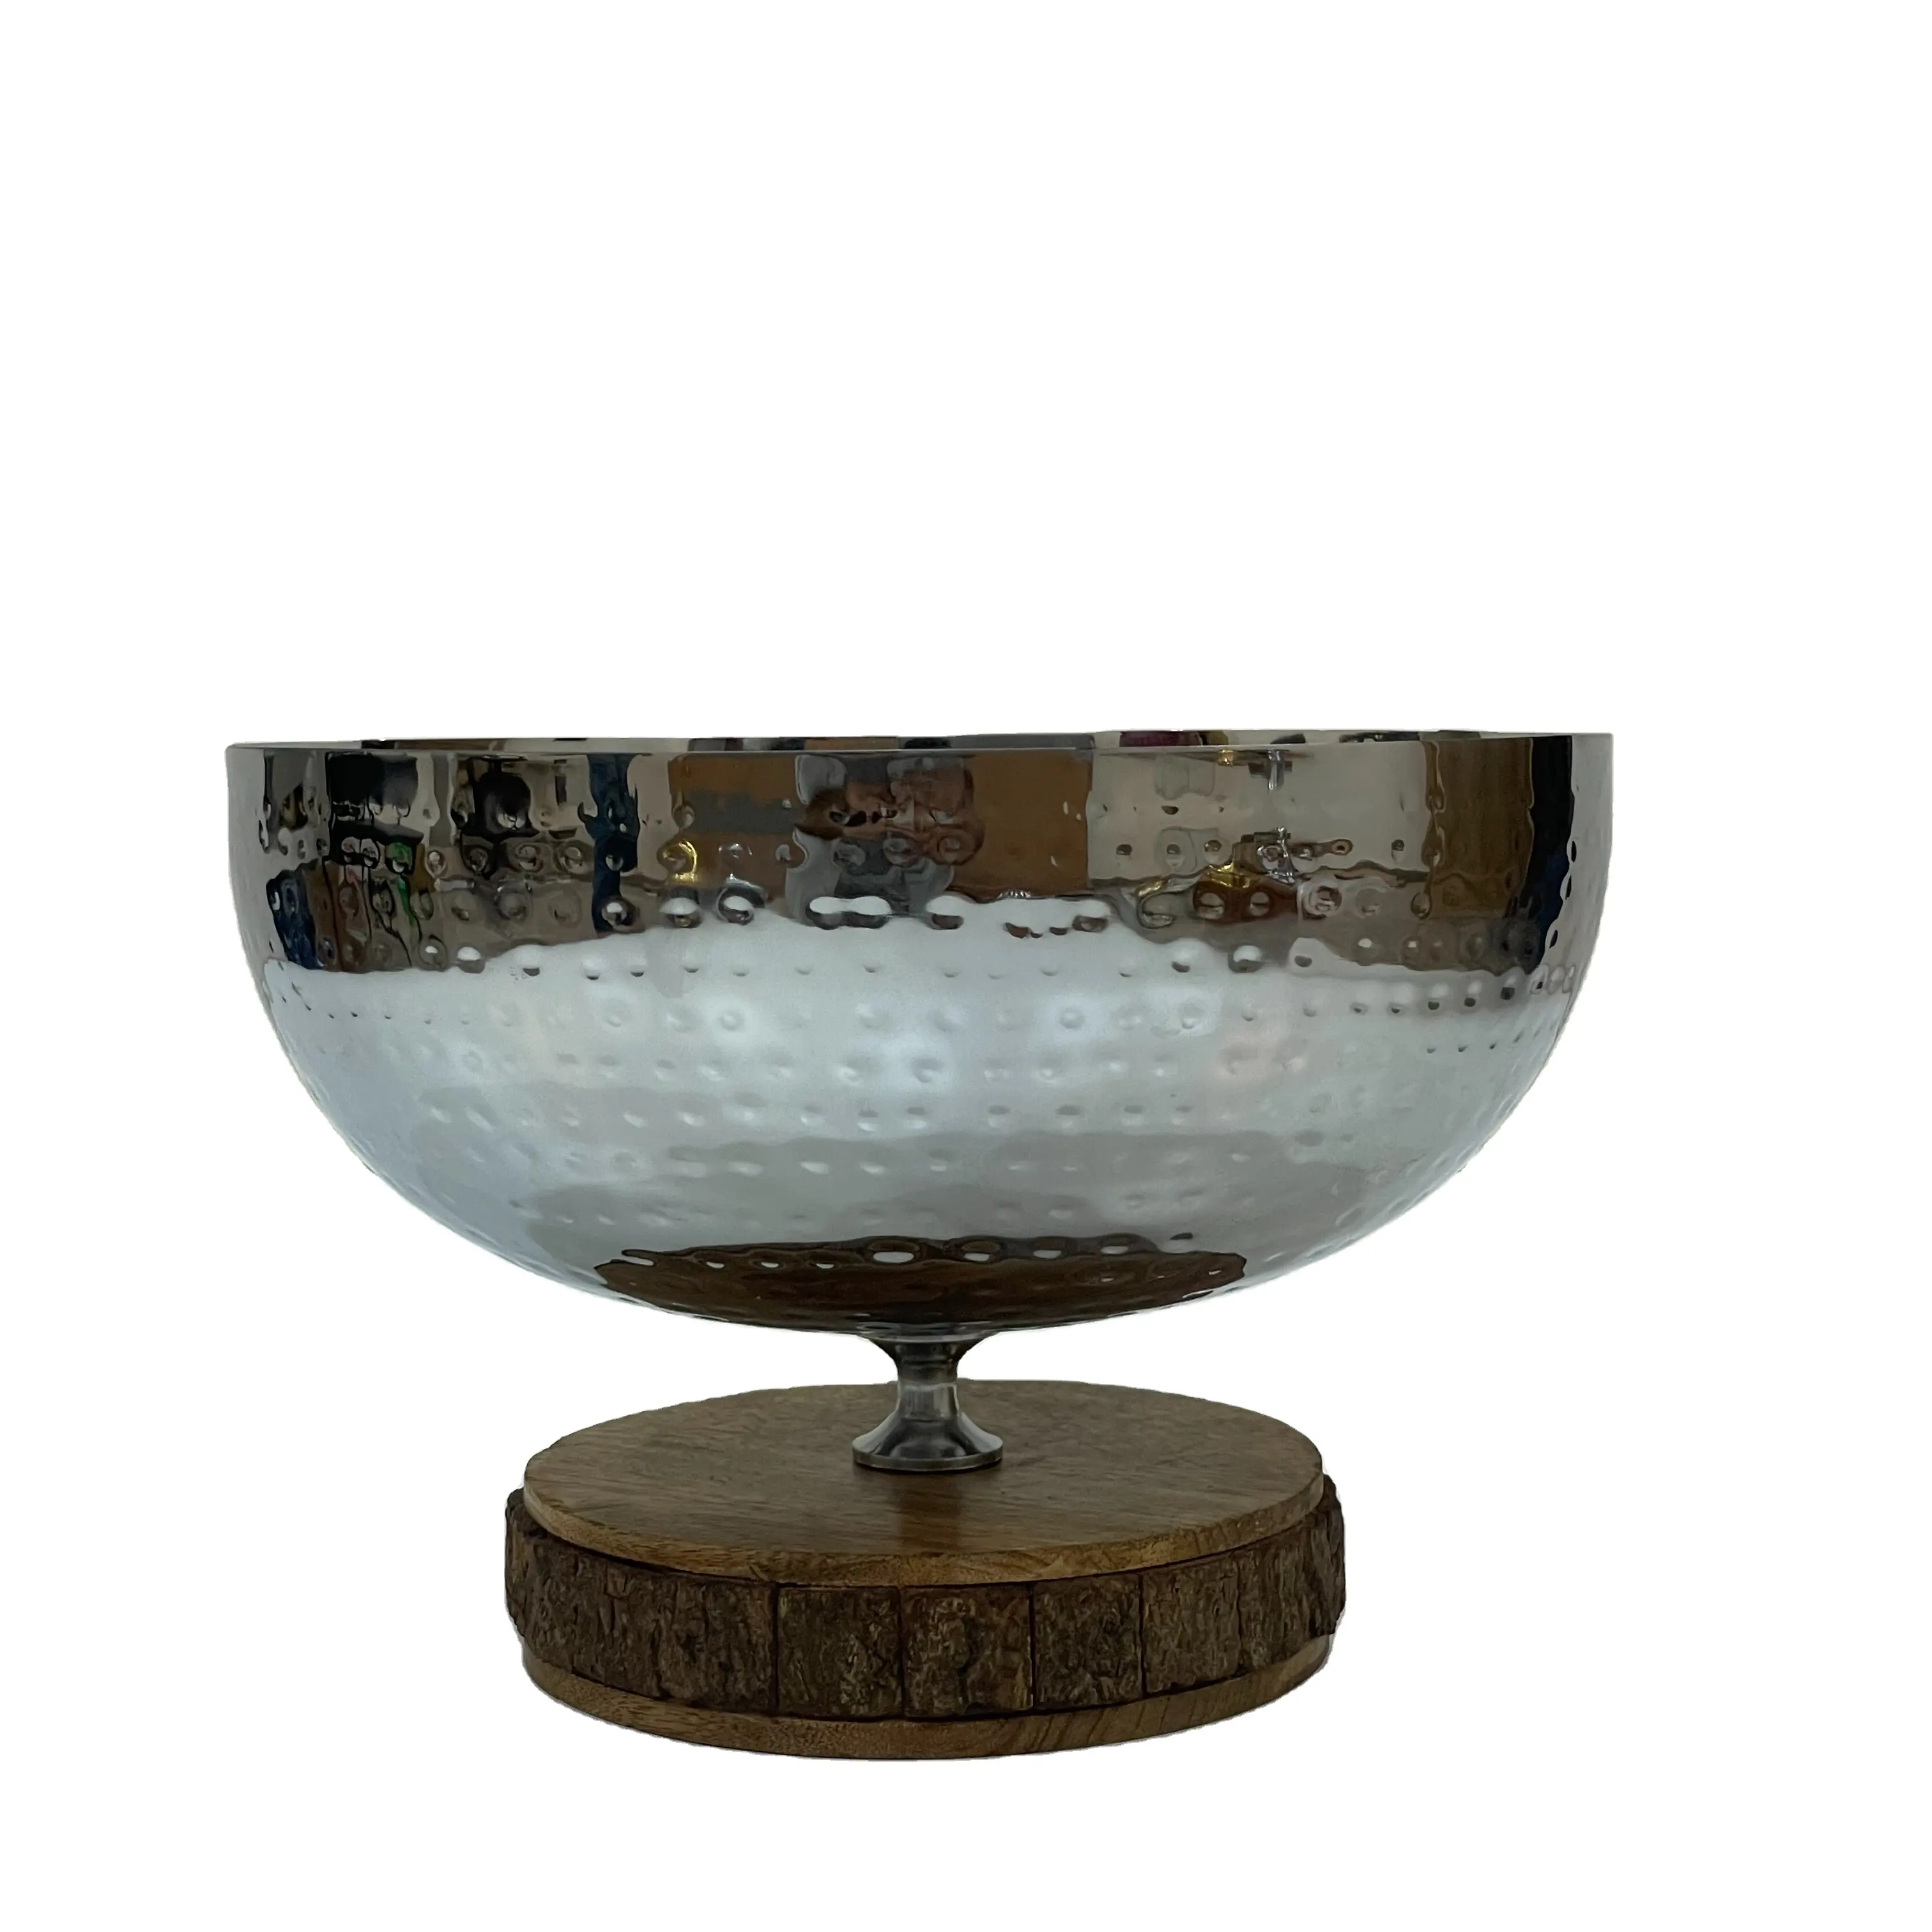 Посеребренная металлическая сервировочная чаша с деревянной подставкой высокого качества в современном стиле для вечеринок по оптовой цене